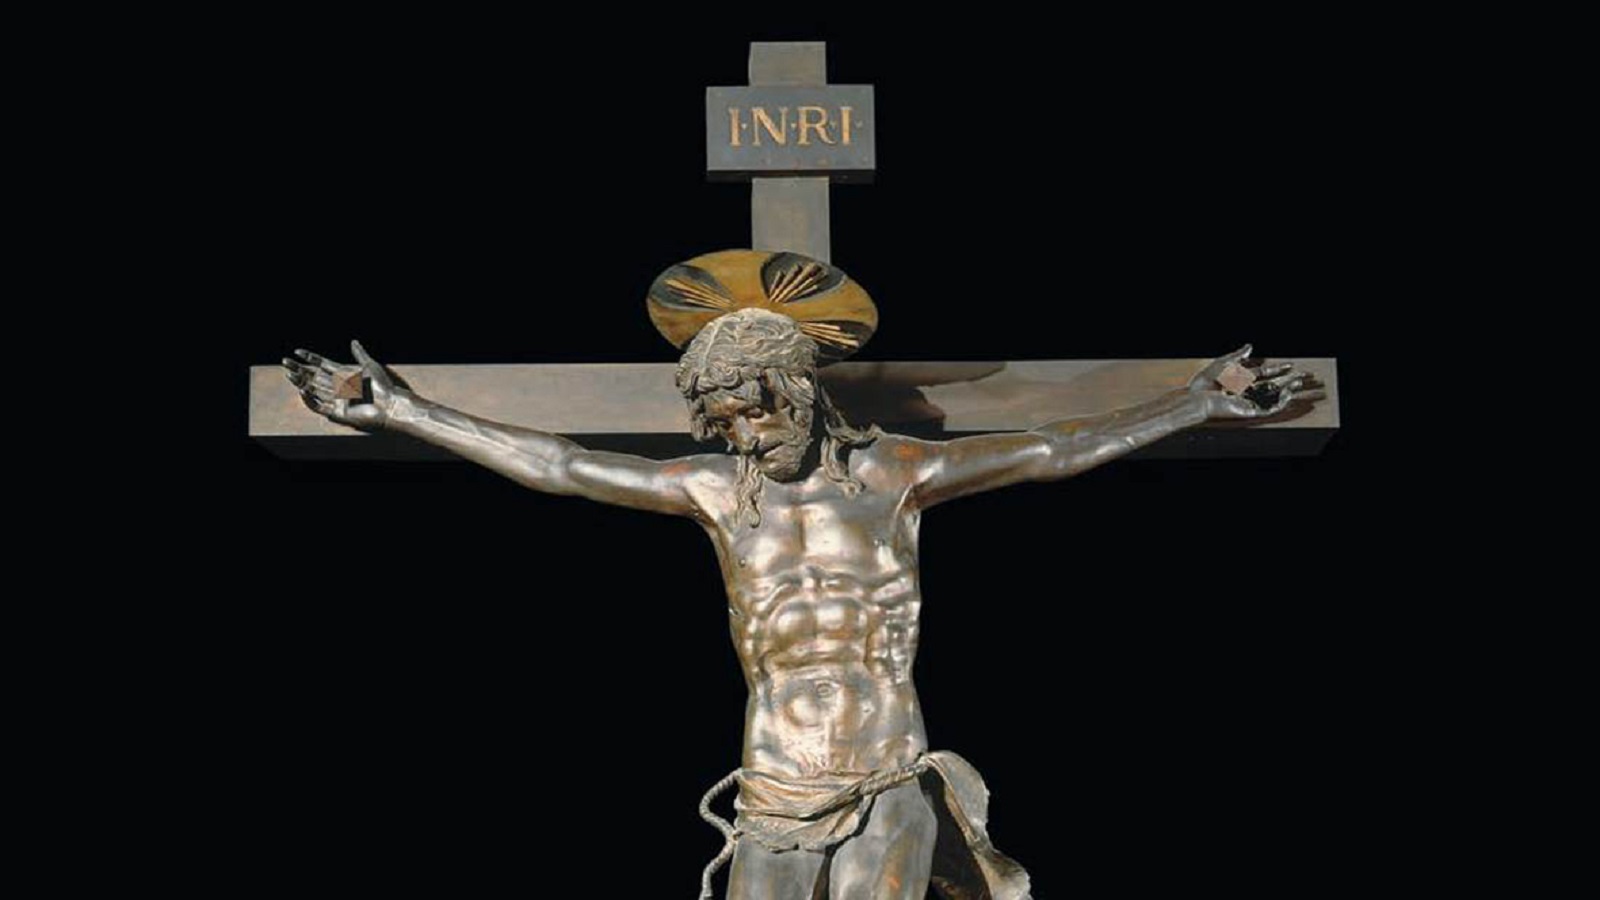  المسيح على الصليب، 1449.